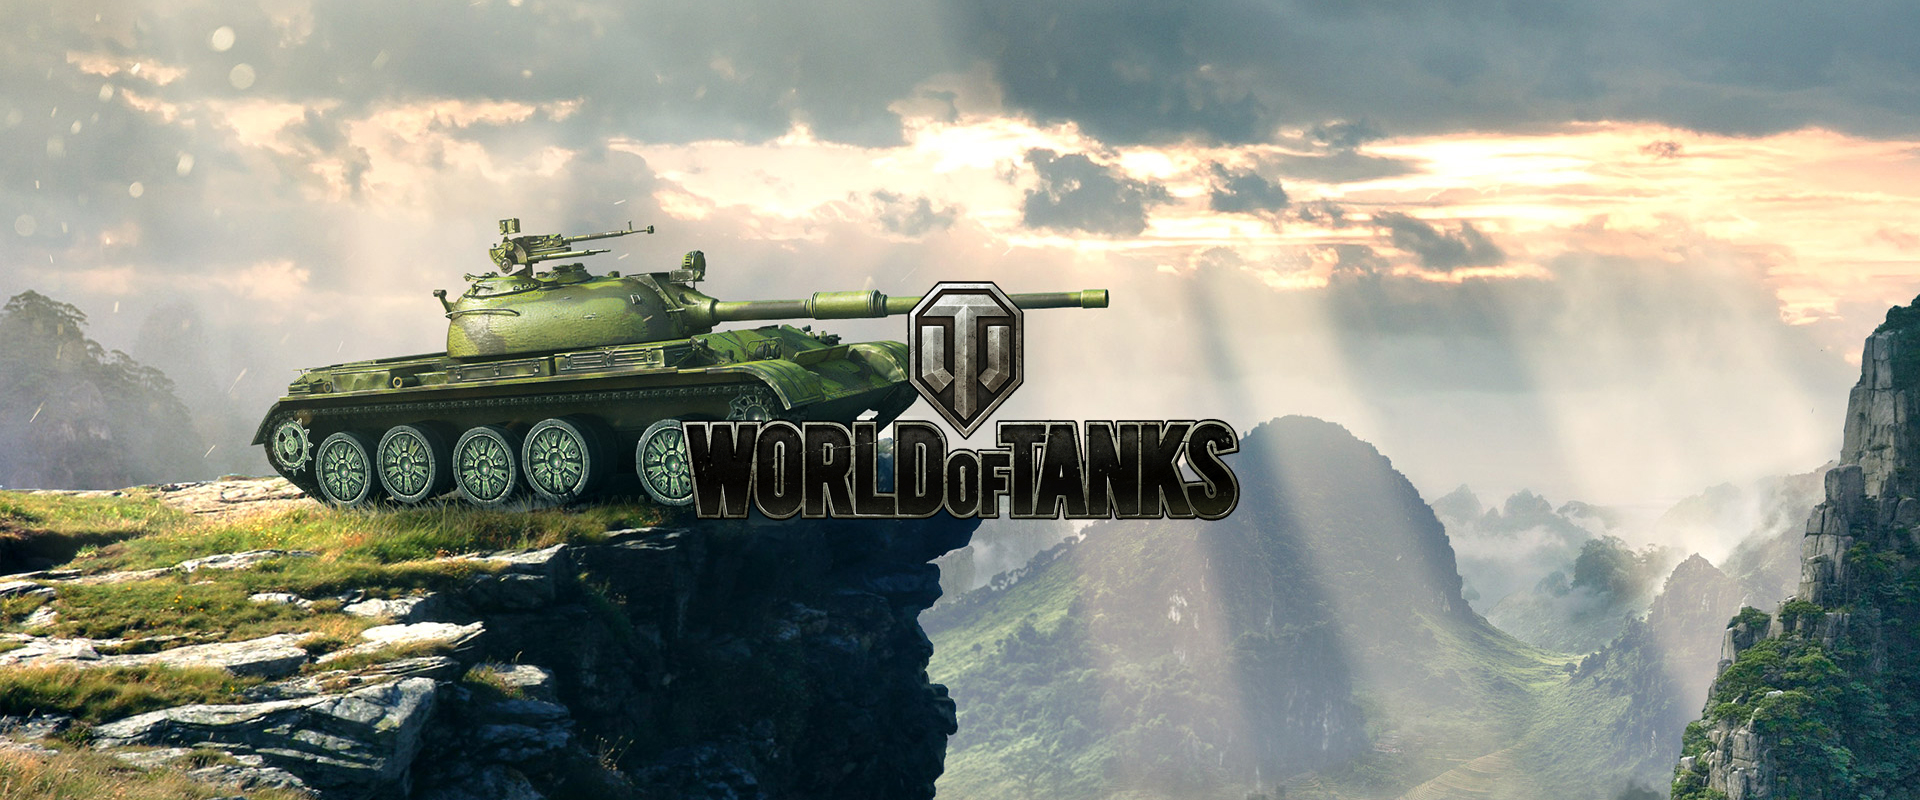 A top 5 legélvezetesebb tier X tank